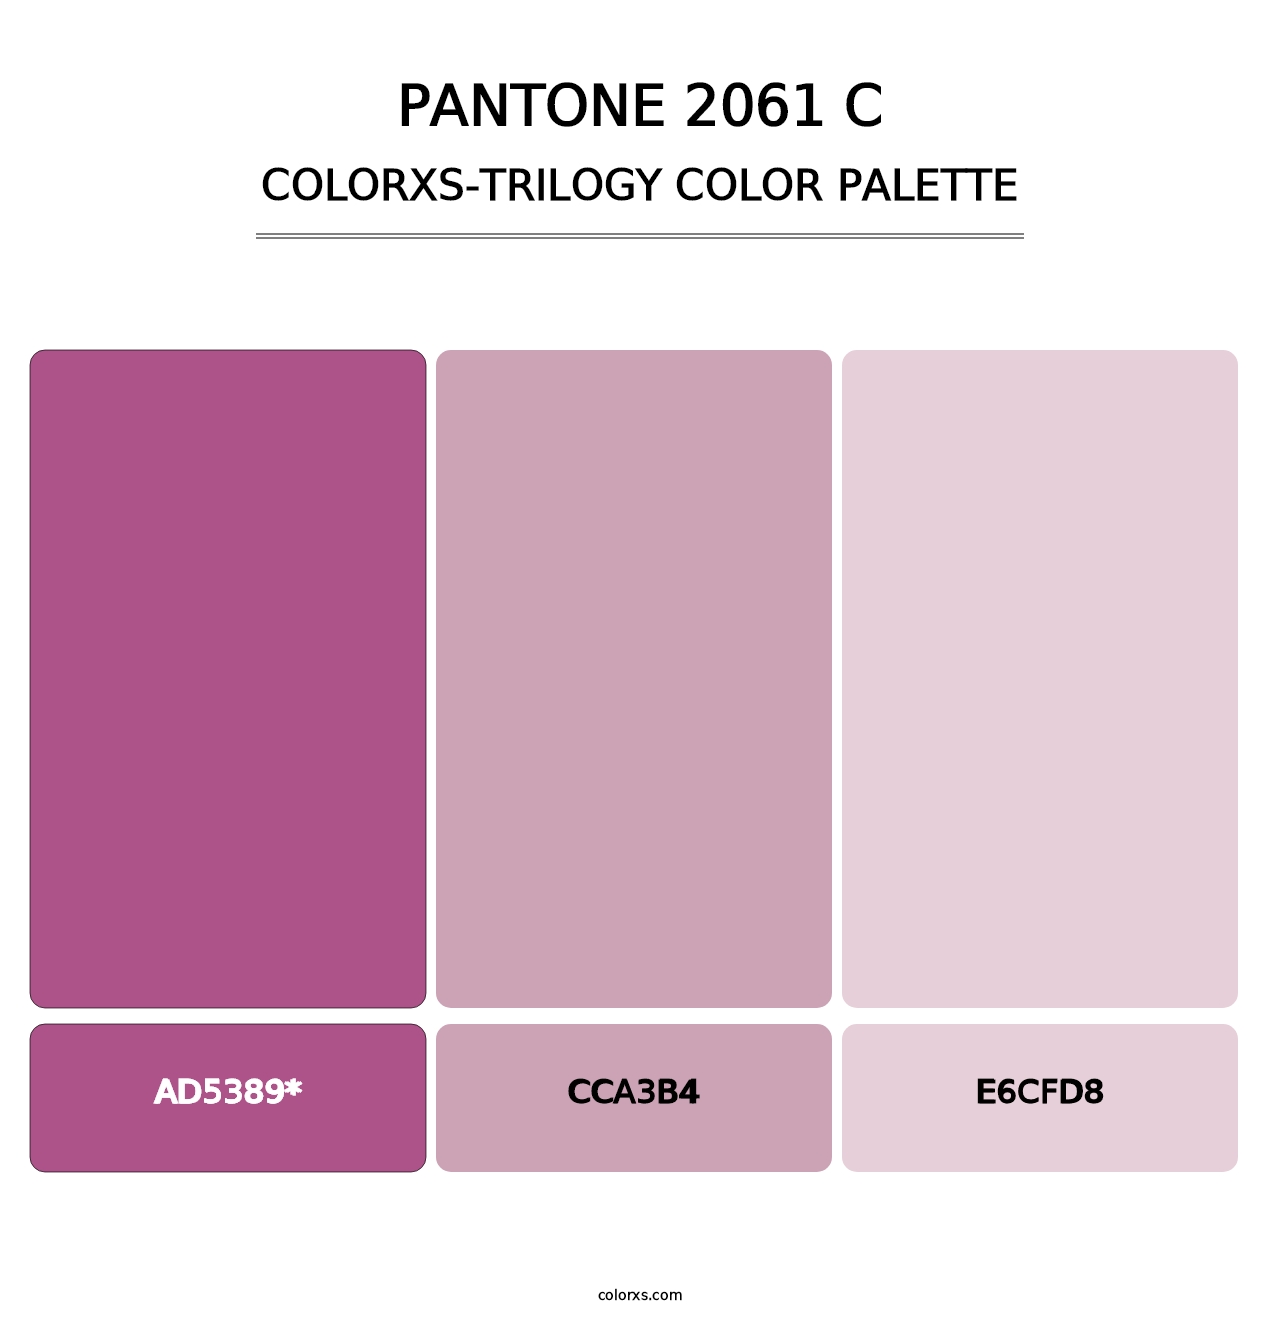 PANTONE 2061 C - Colorxs Trilogy Palette